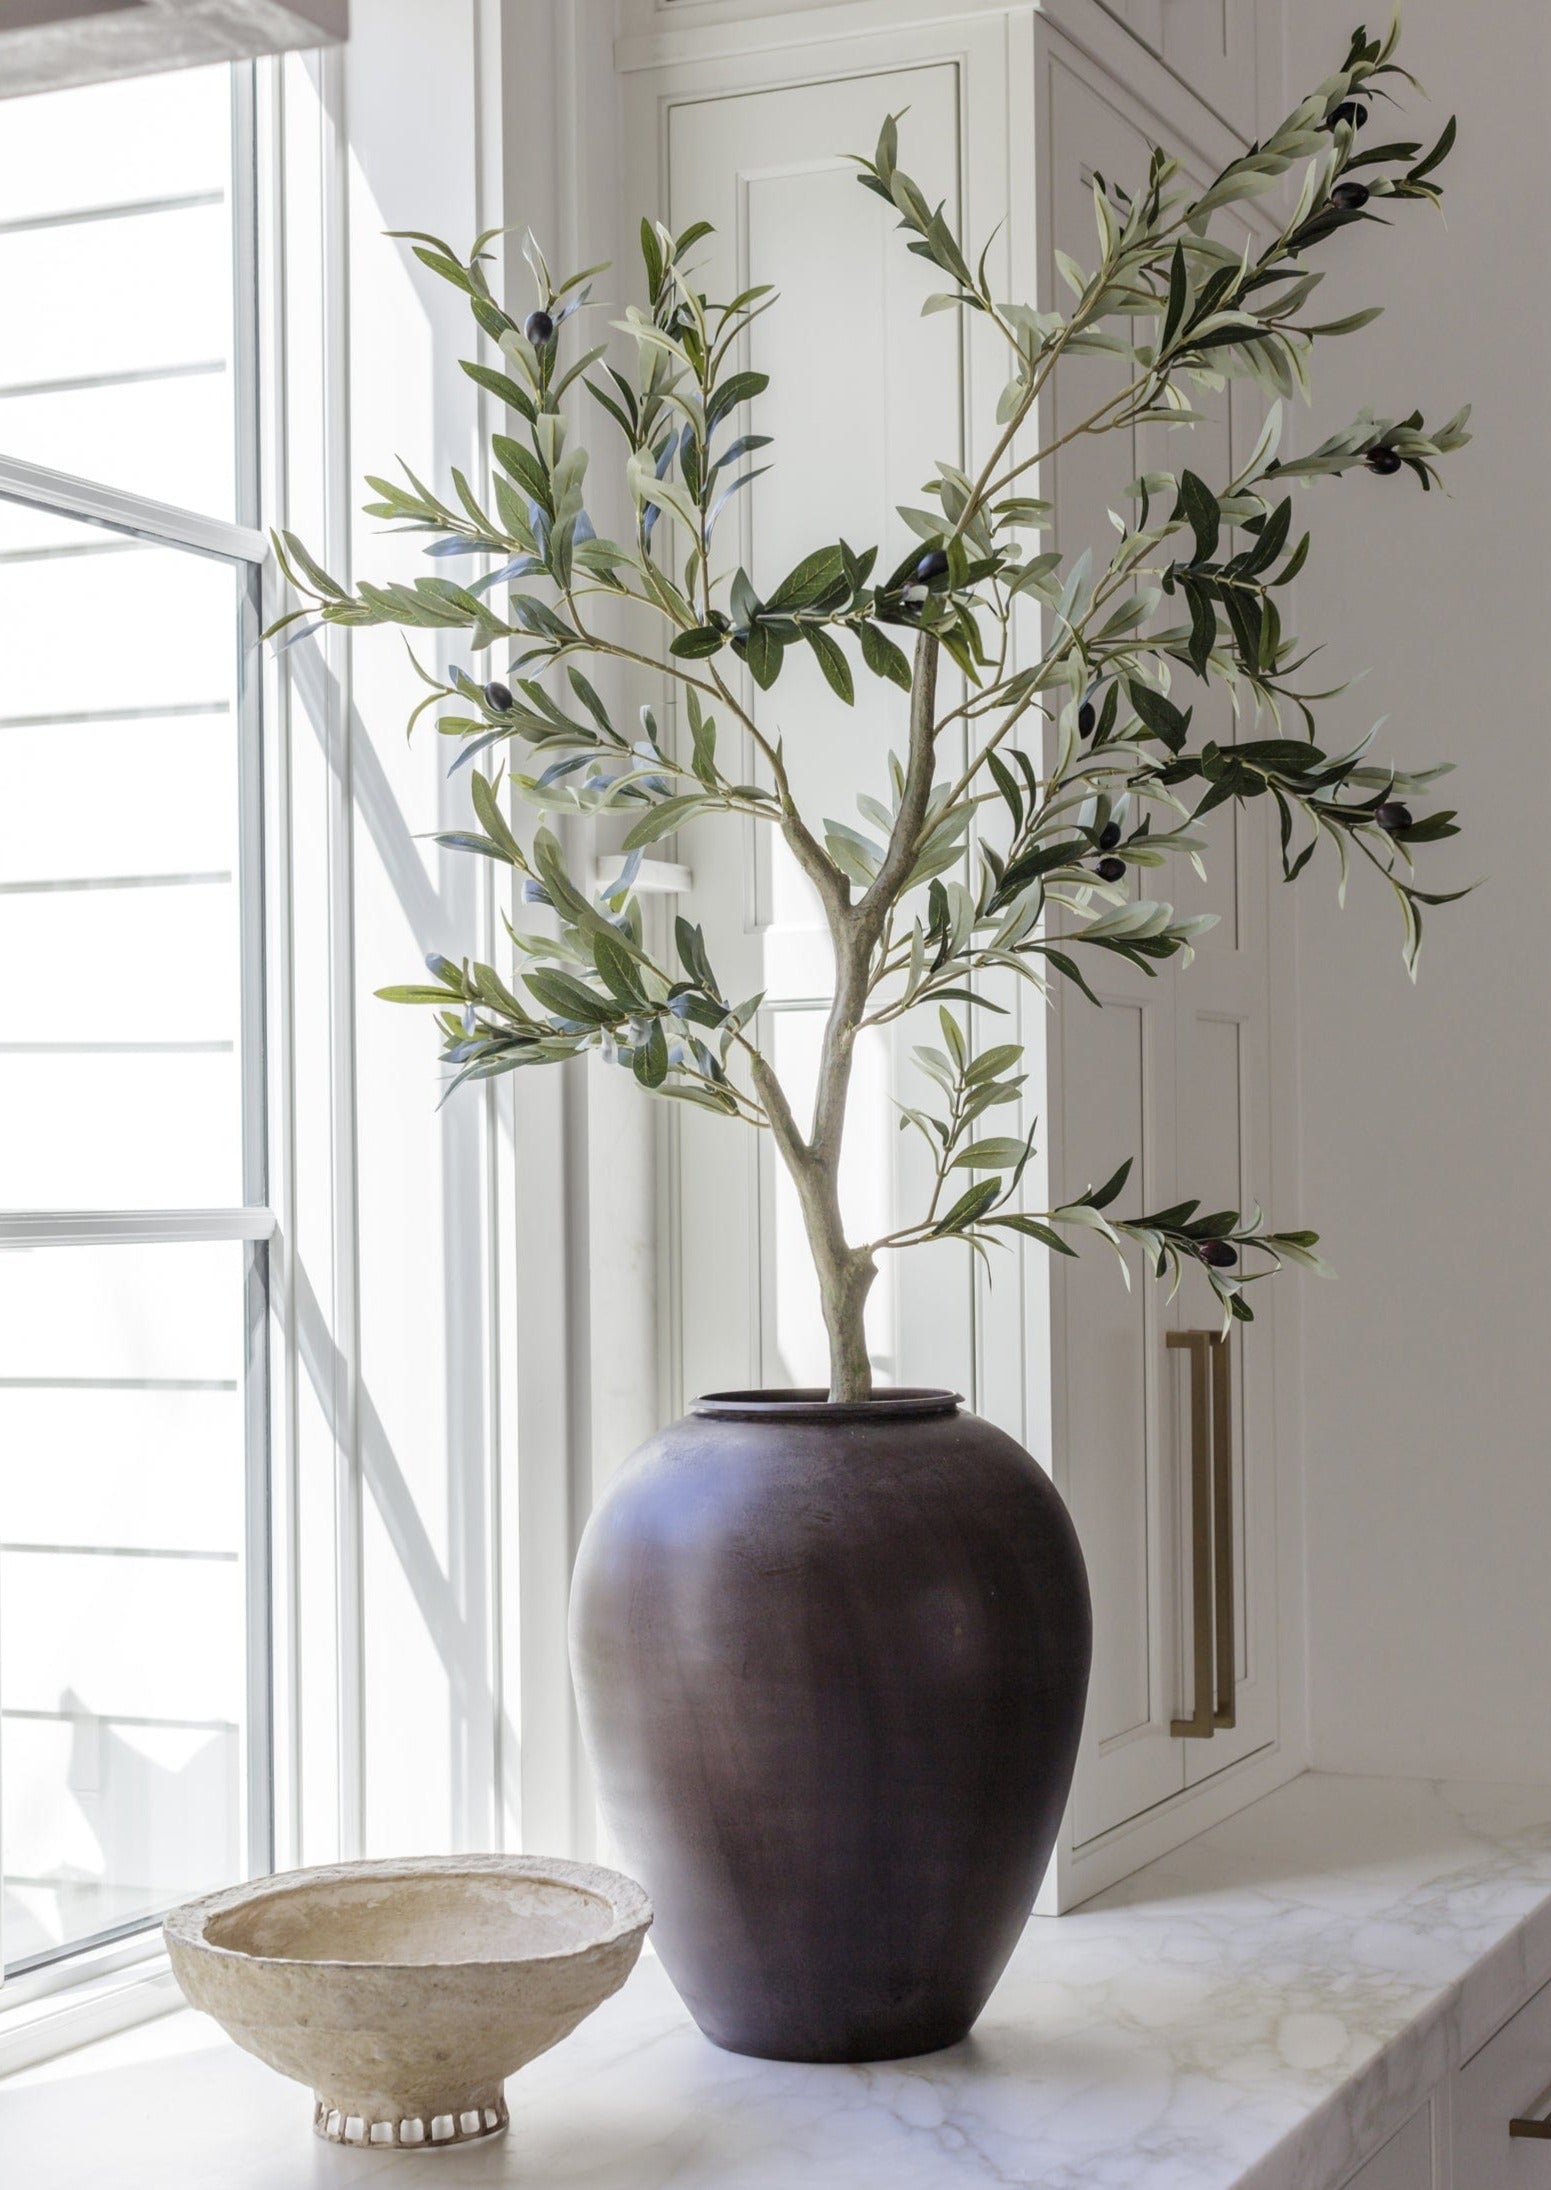 https://www.afloral.com/cdn/shop/products/Afloral-Artificial-Olive-Tree-in-Brass-Vase.jpg?v=1702070222&width=3840